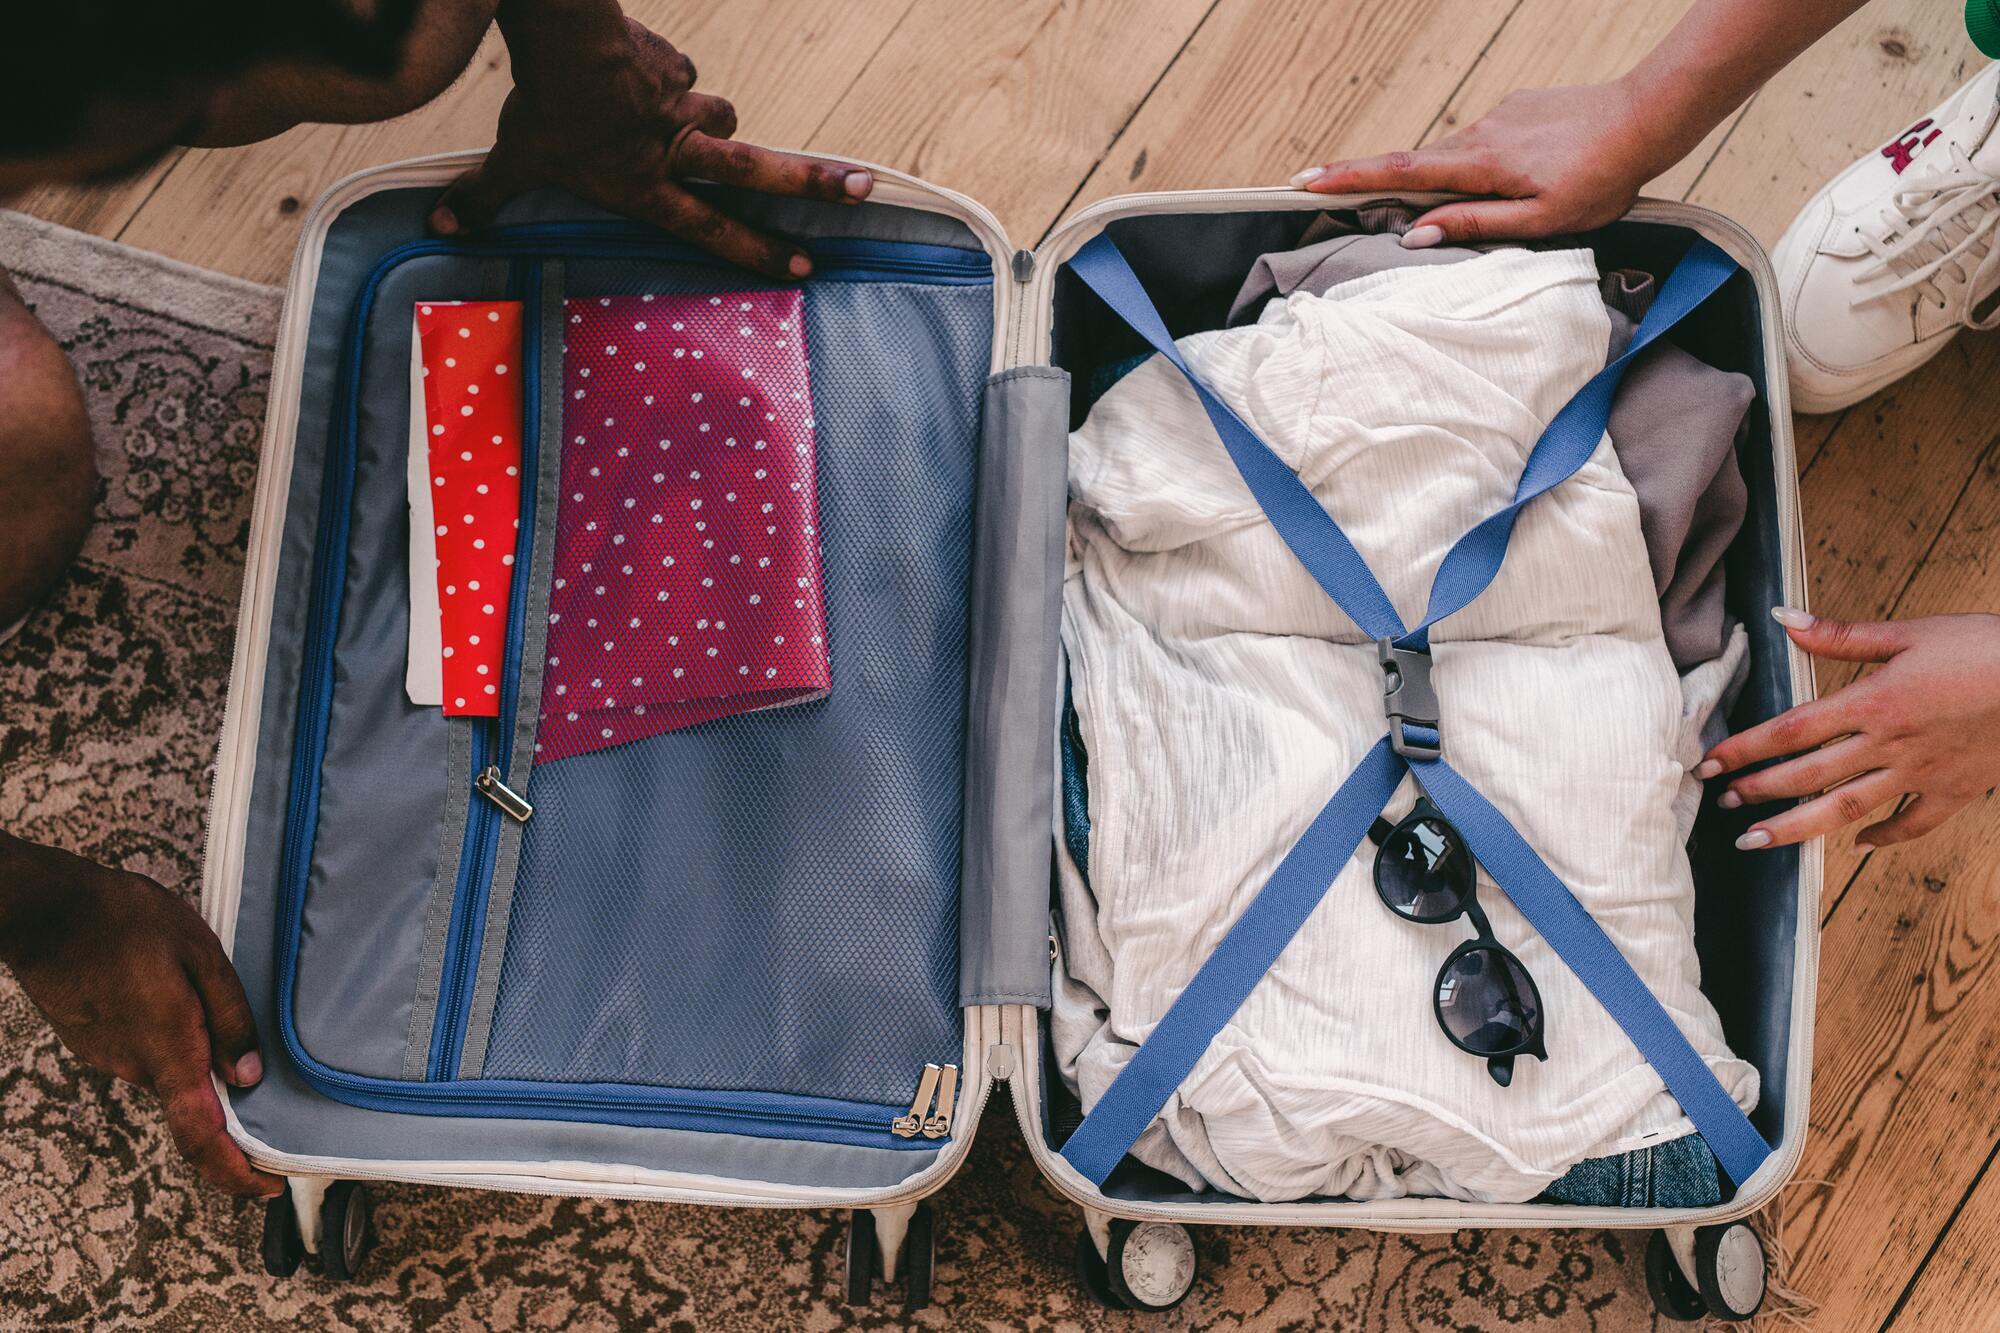 Положите в чемодан что-то необычное: как облегчить авиакомпании поиск пропавшего багажа и ускорить возврат